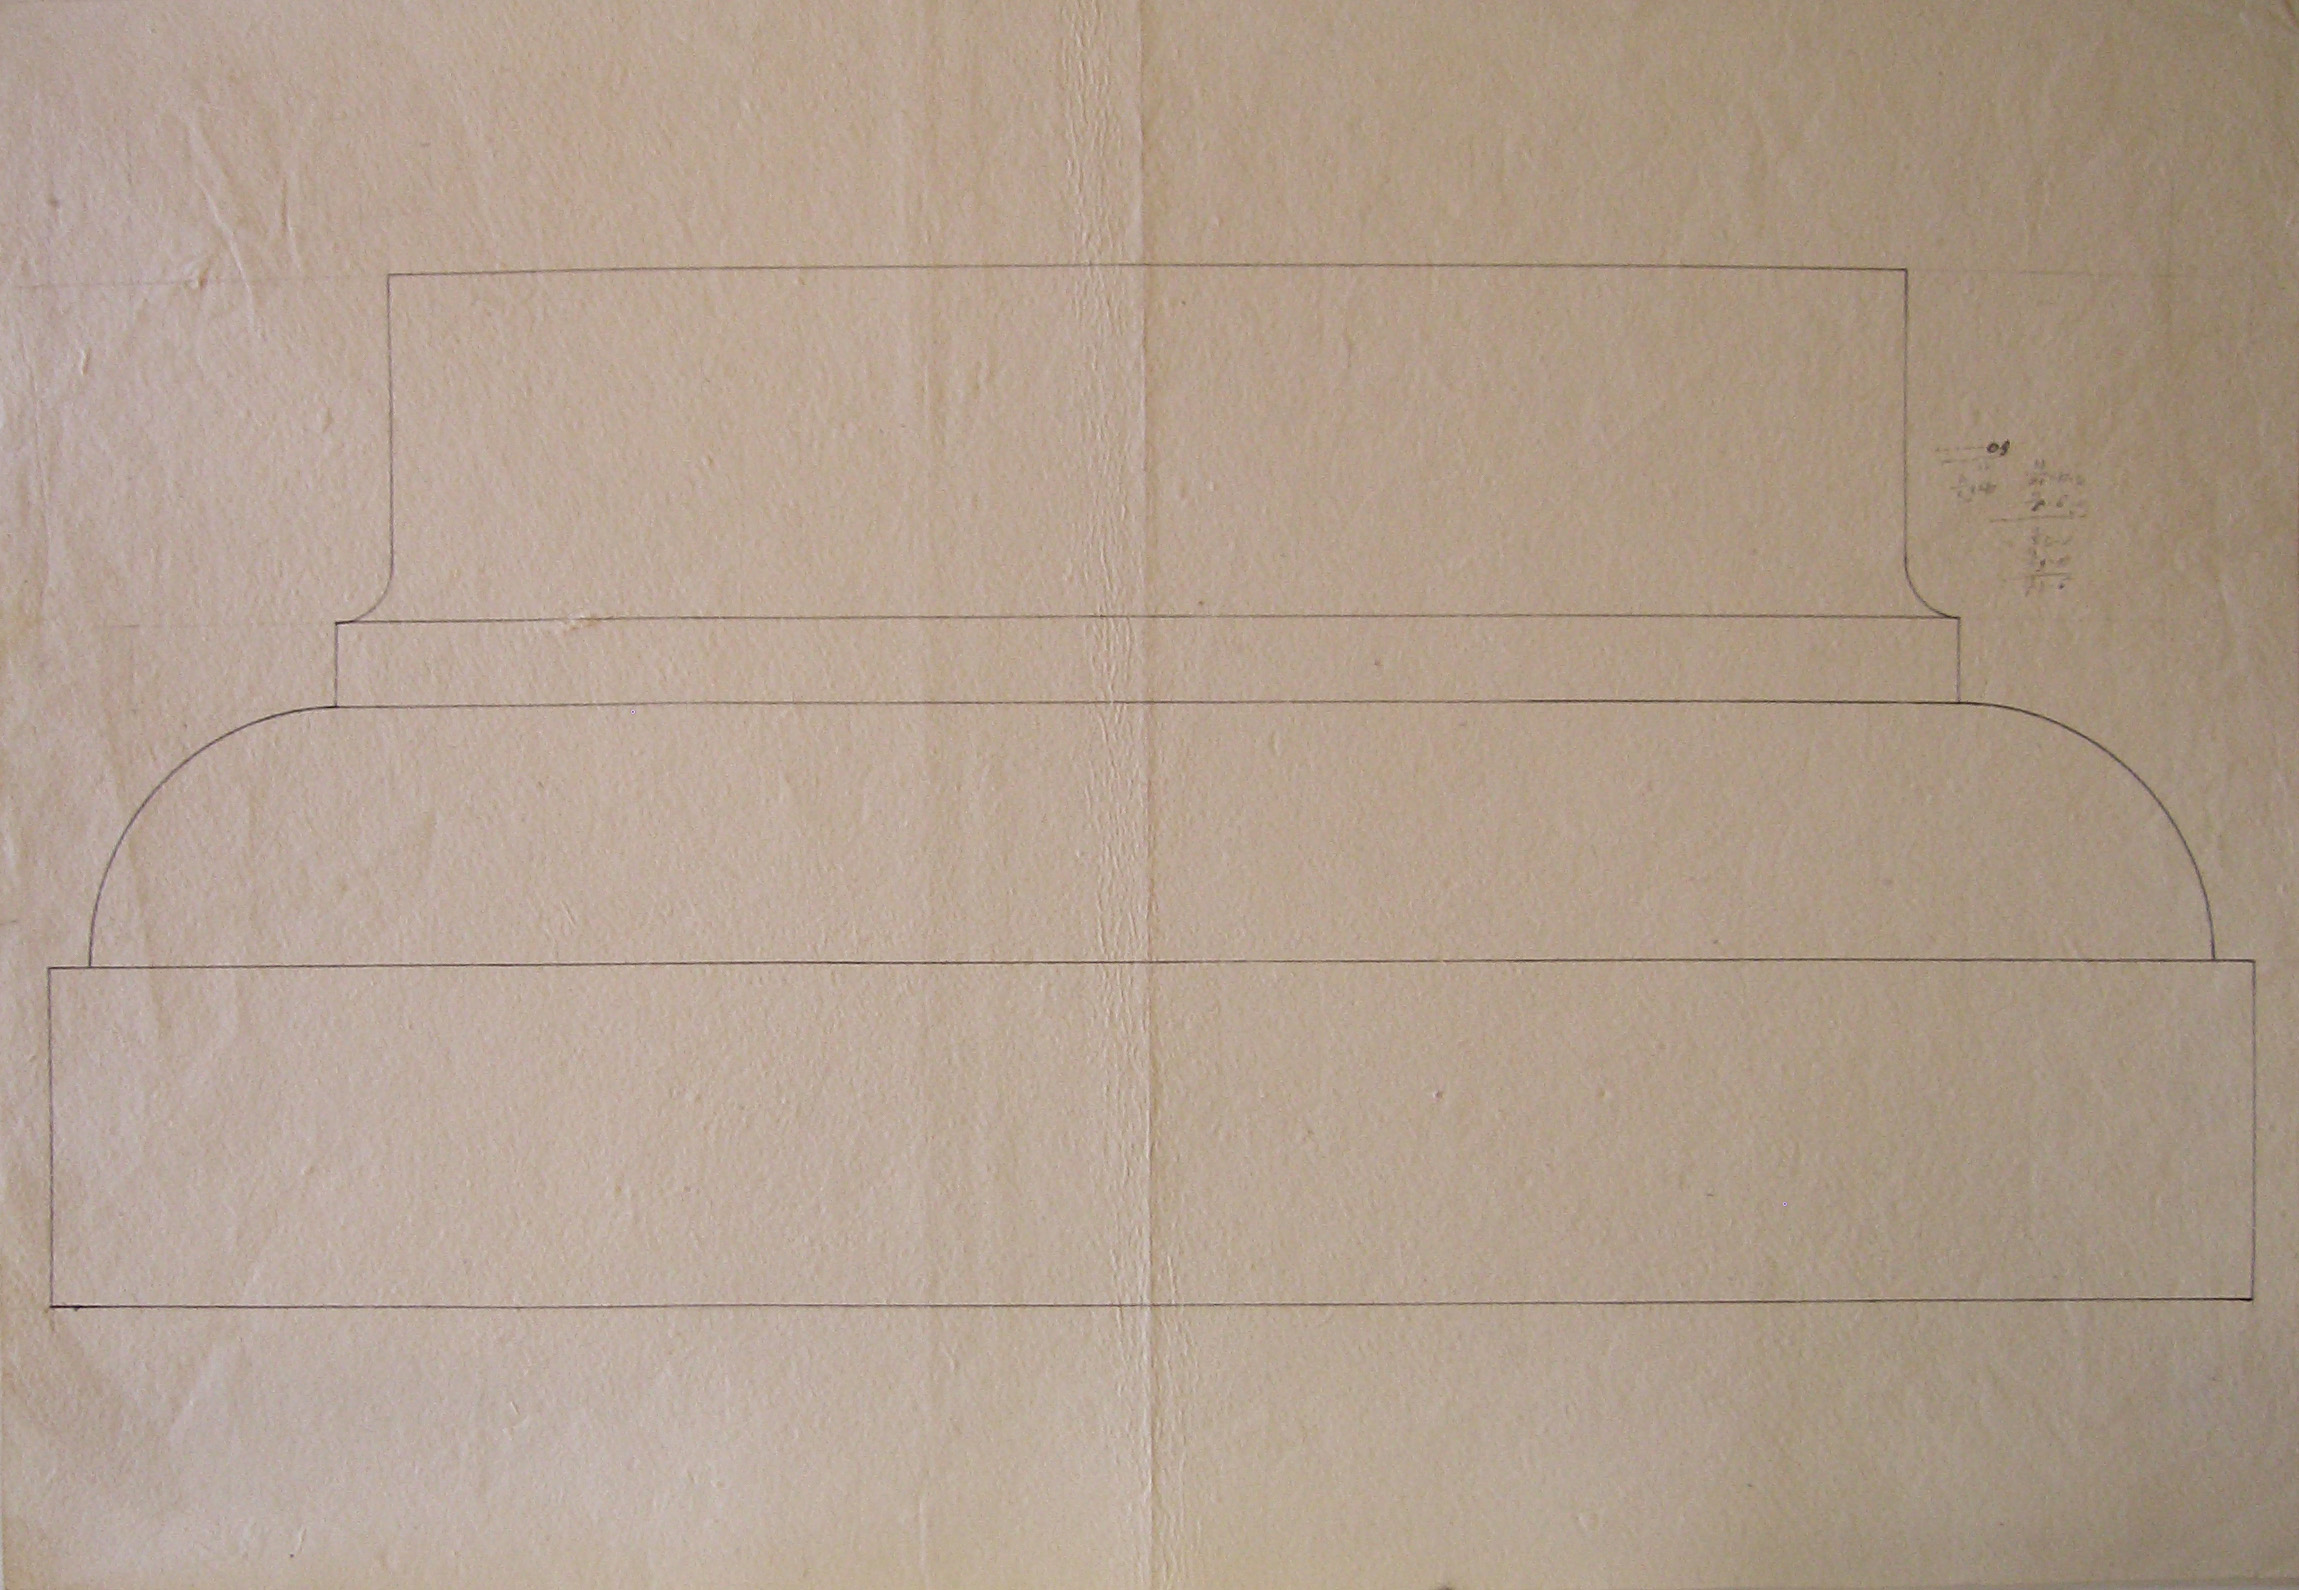 Progetto architettonico: dettaglio di base ionica (disegno architettonico) di Cagnola Luigi (attribuito) (secc. XVIII/XIX)